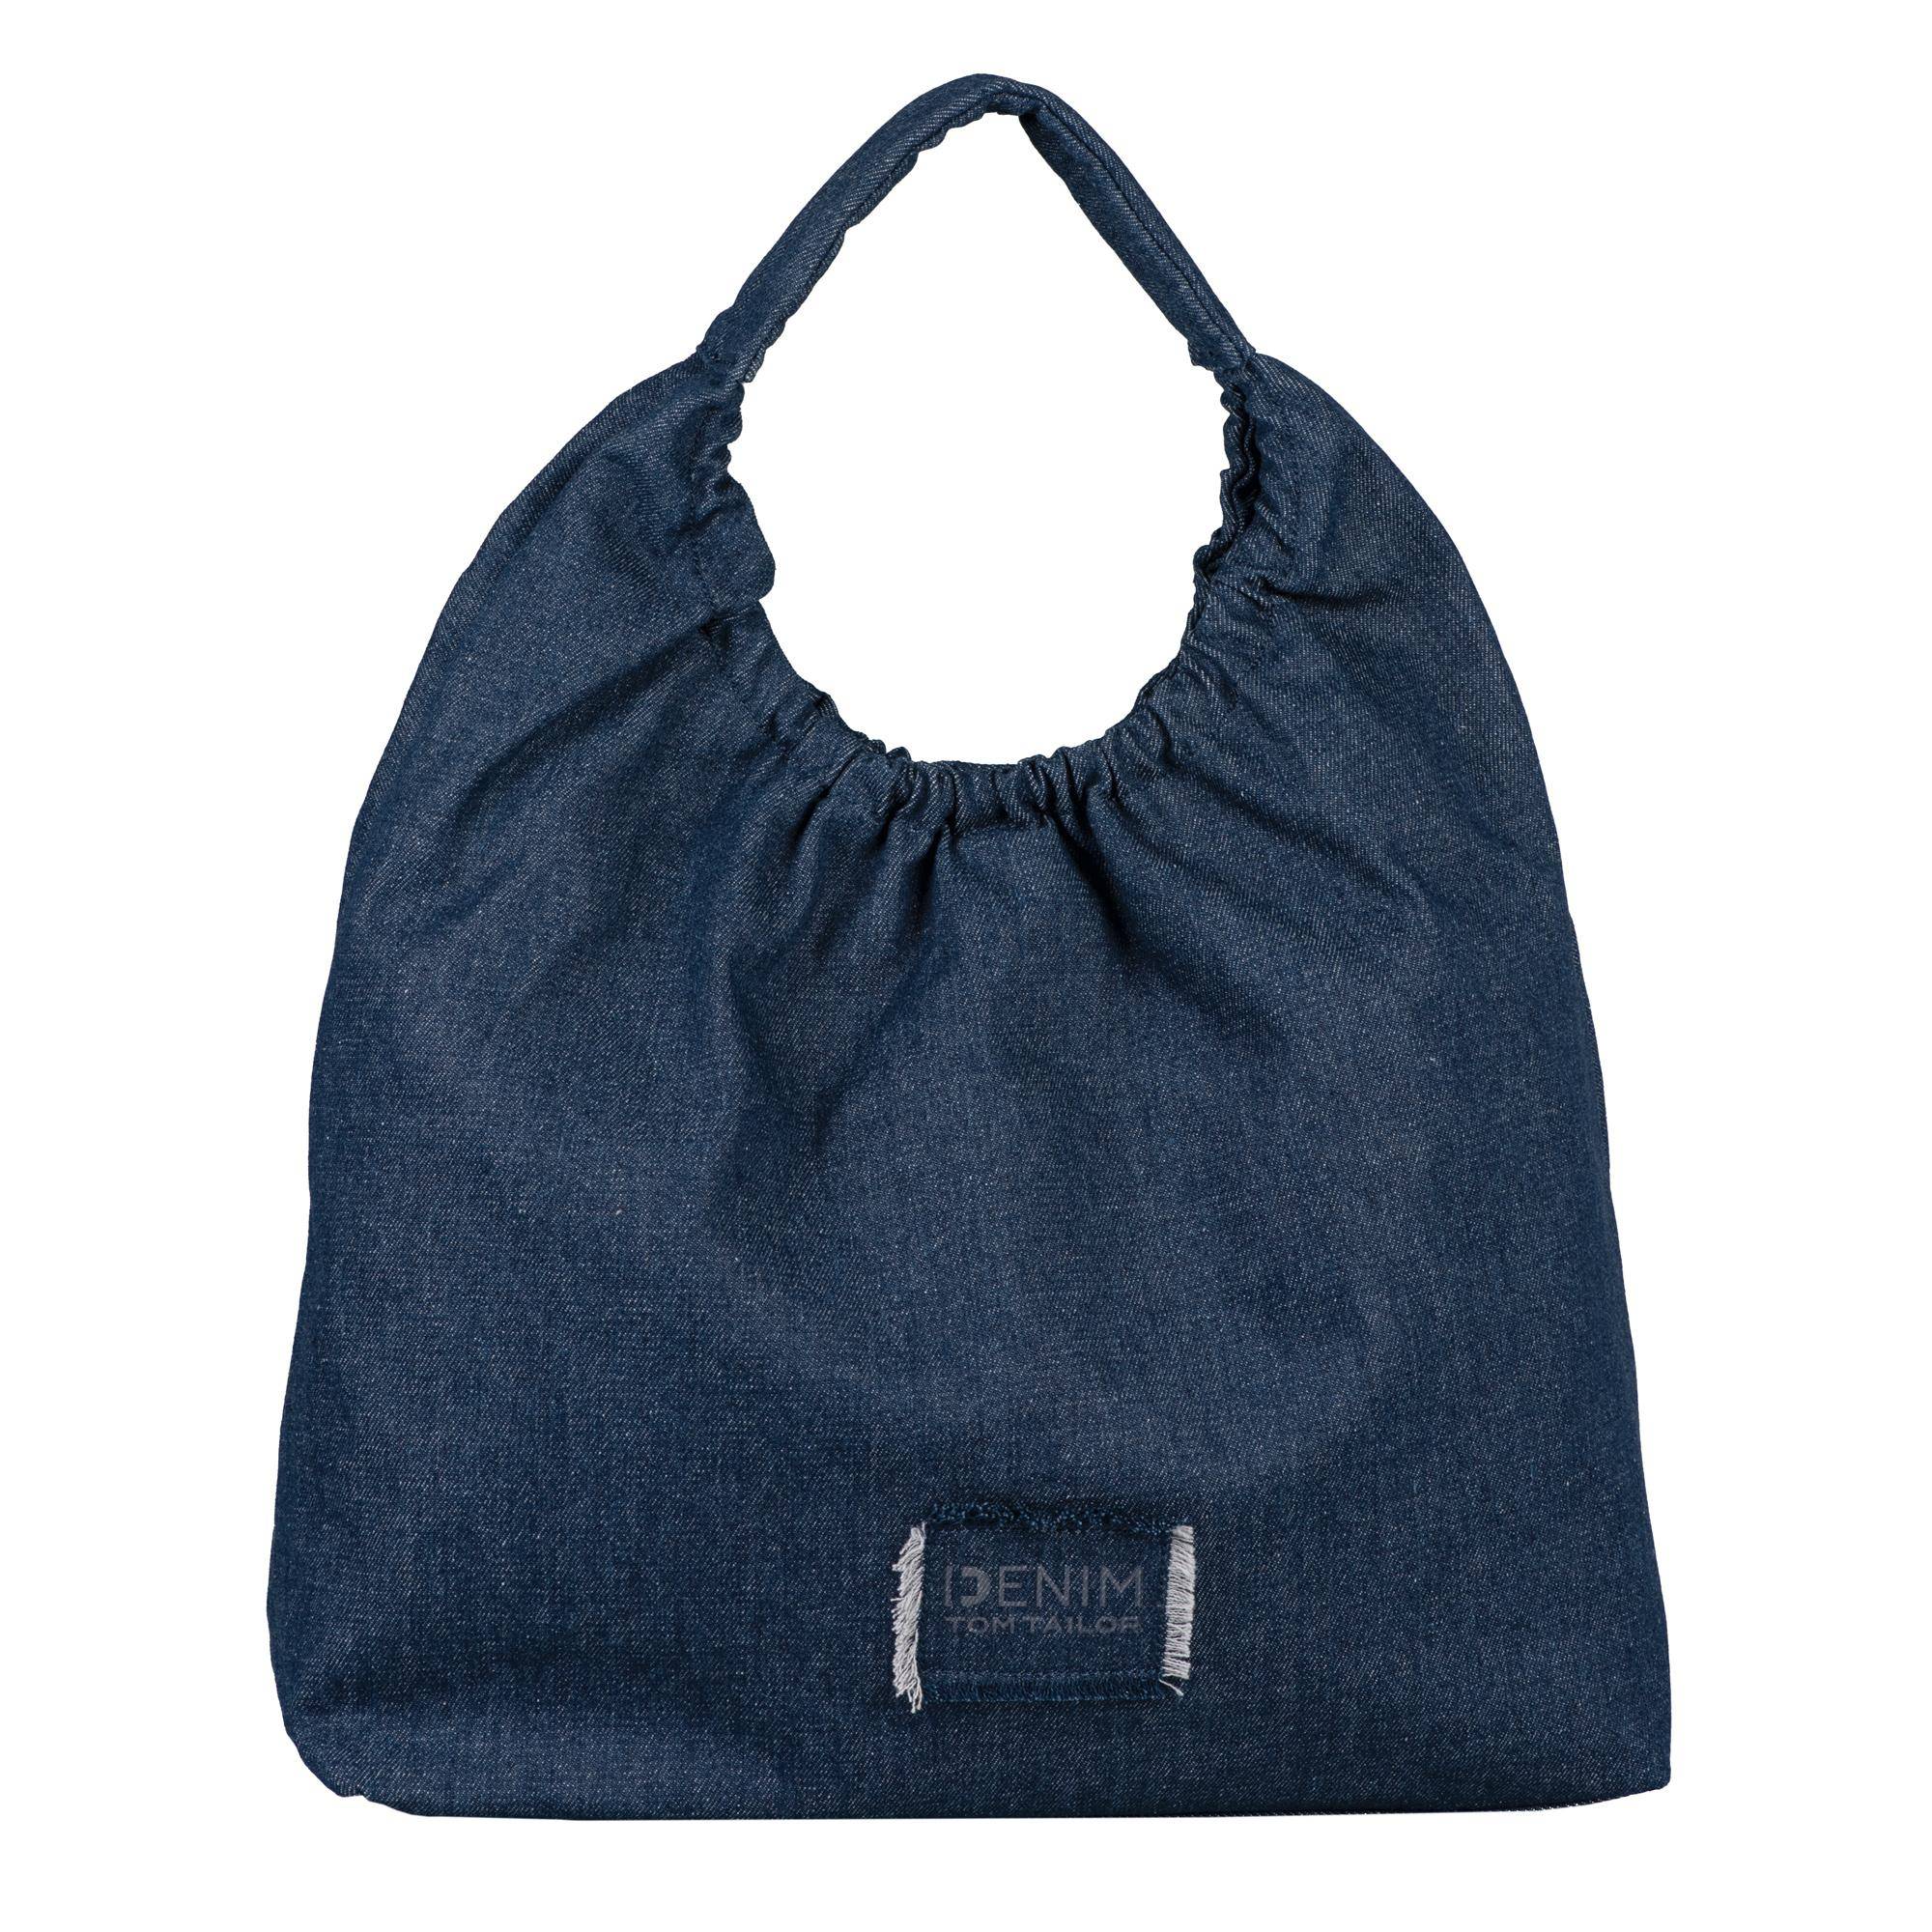 Женская сумка Tom Tailor, синяя, цвет синий, размер ONE SIZE